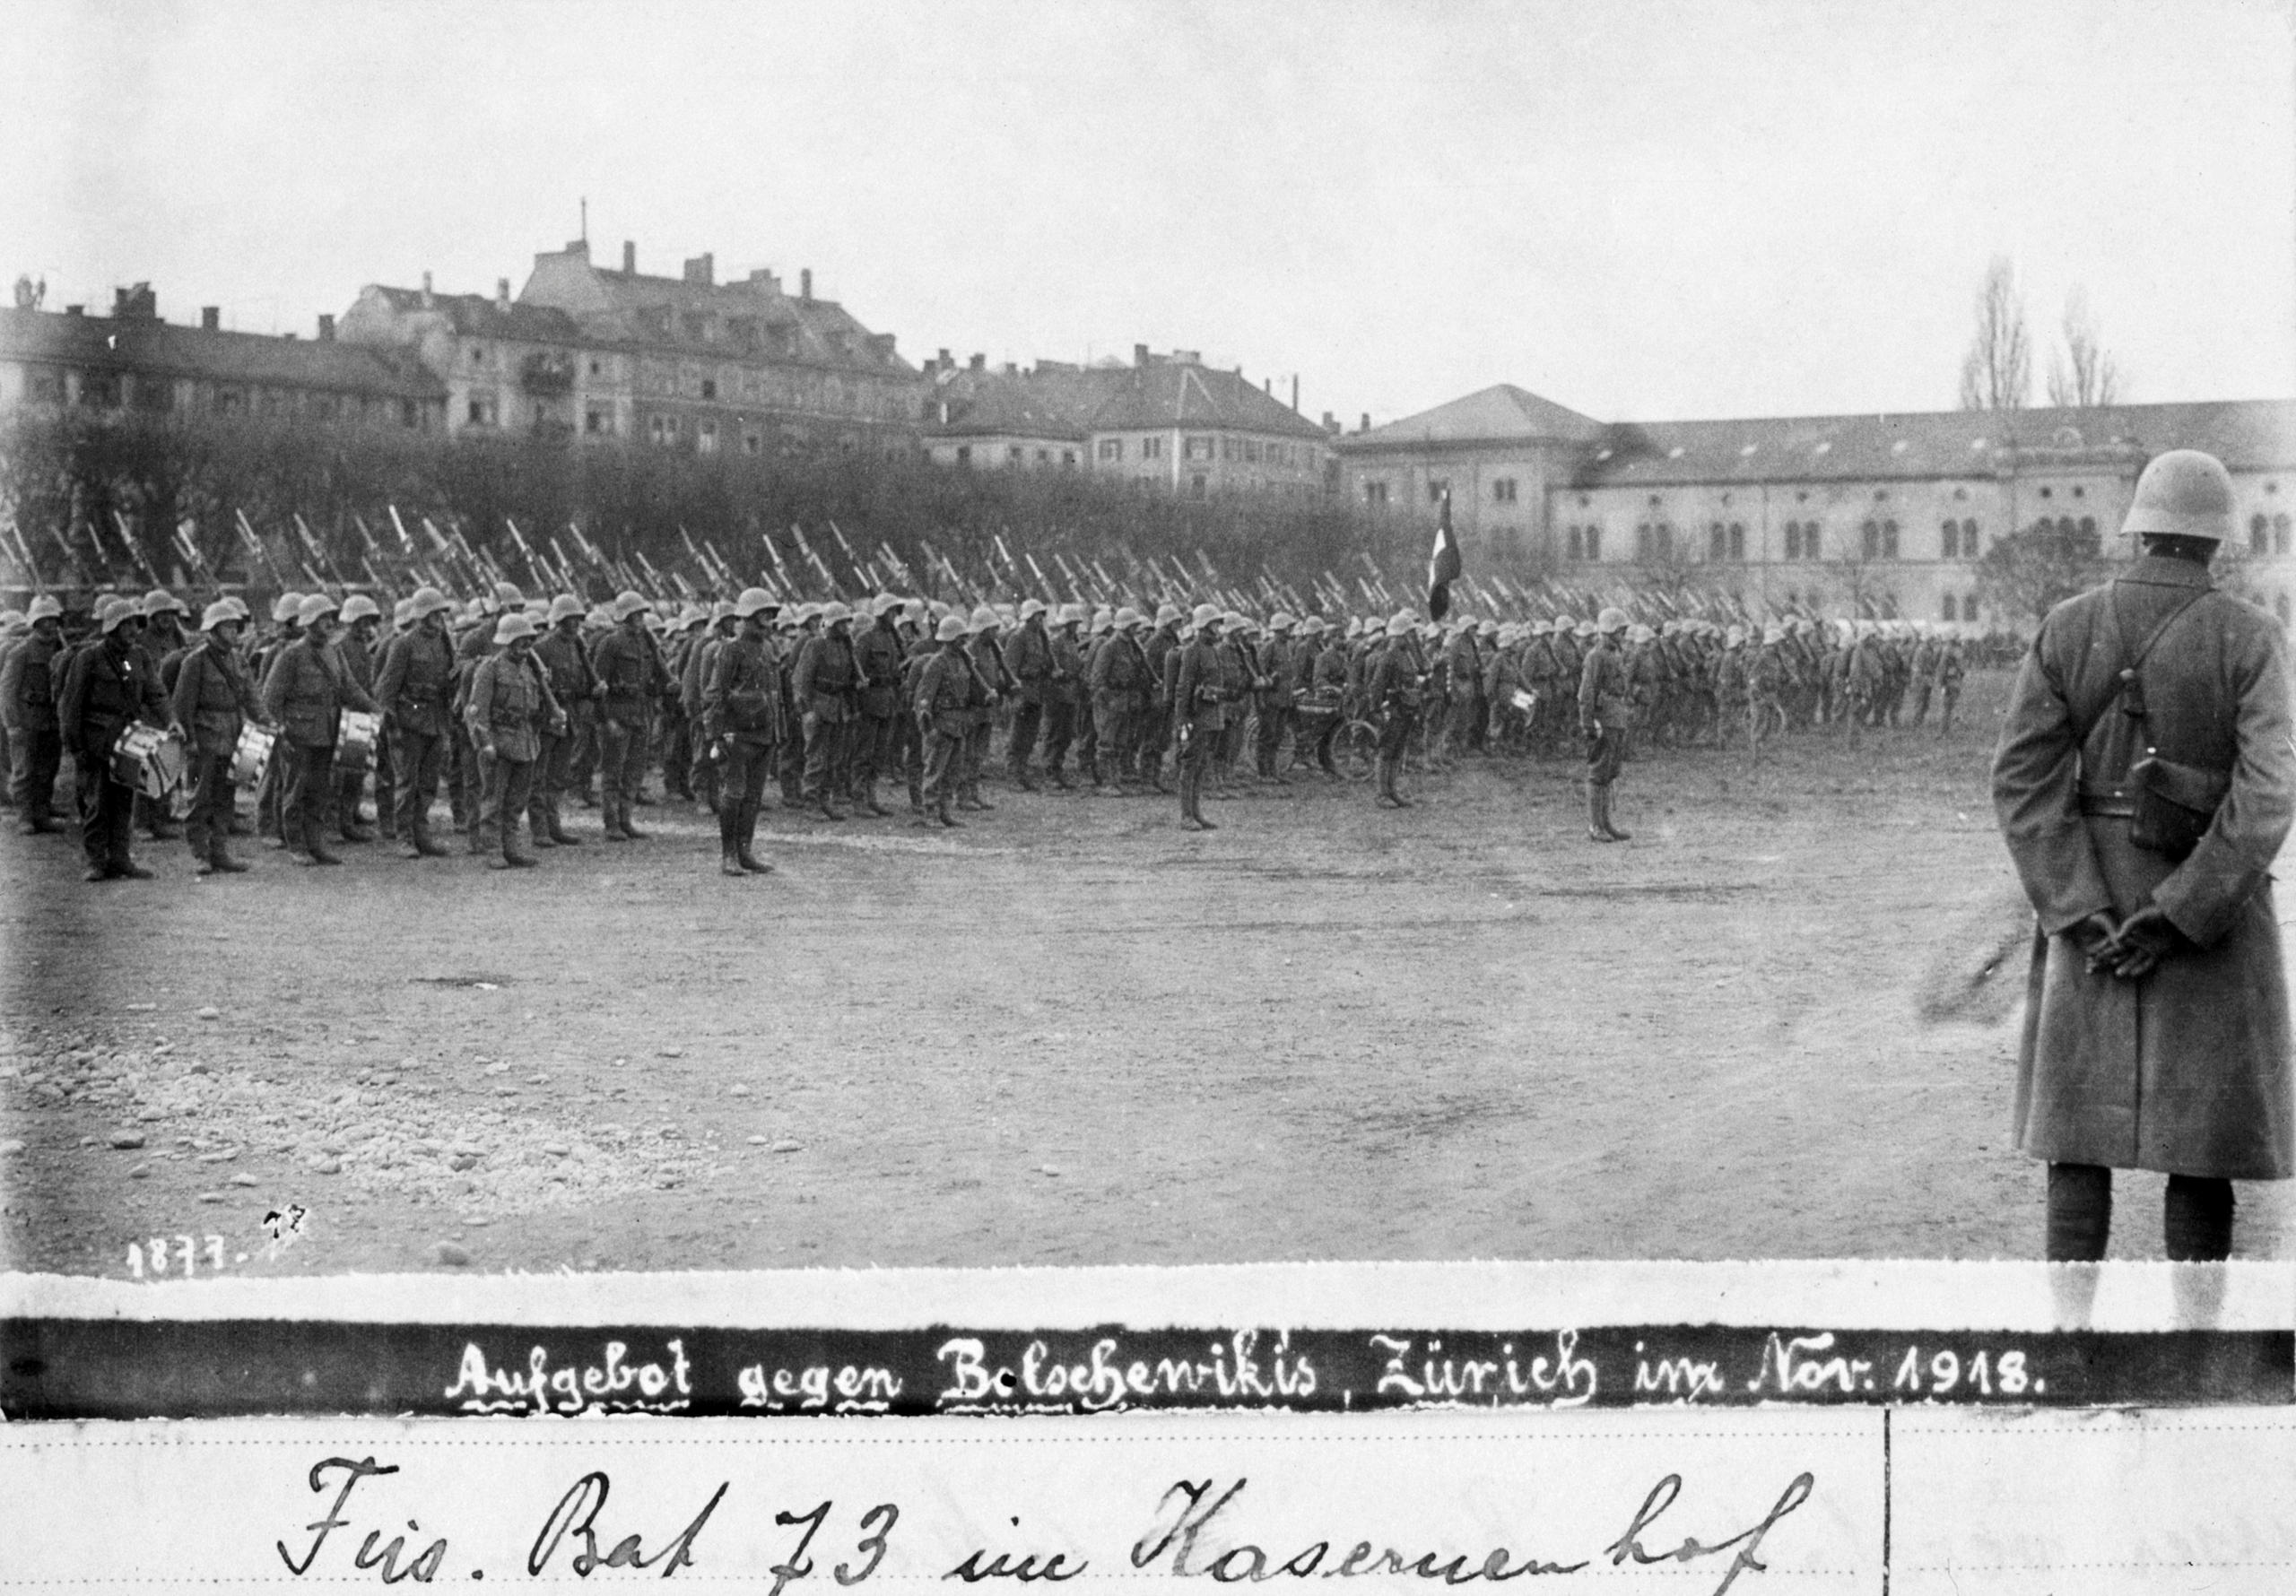 Armeebattaillon auf der Kasernenwiese. Historische Fotografie.